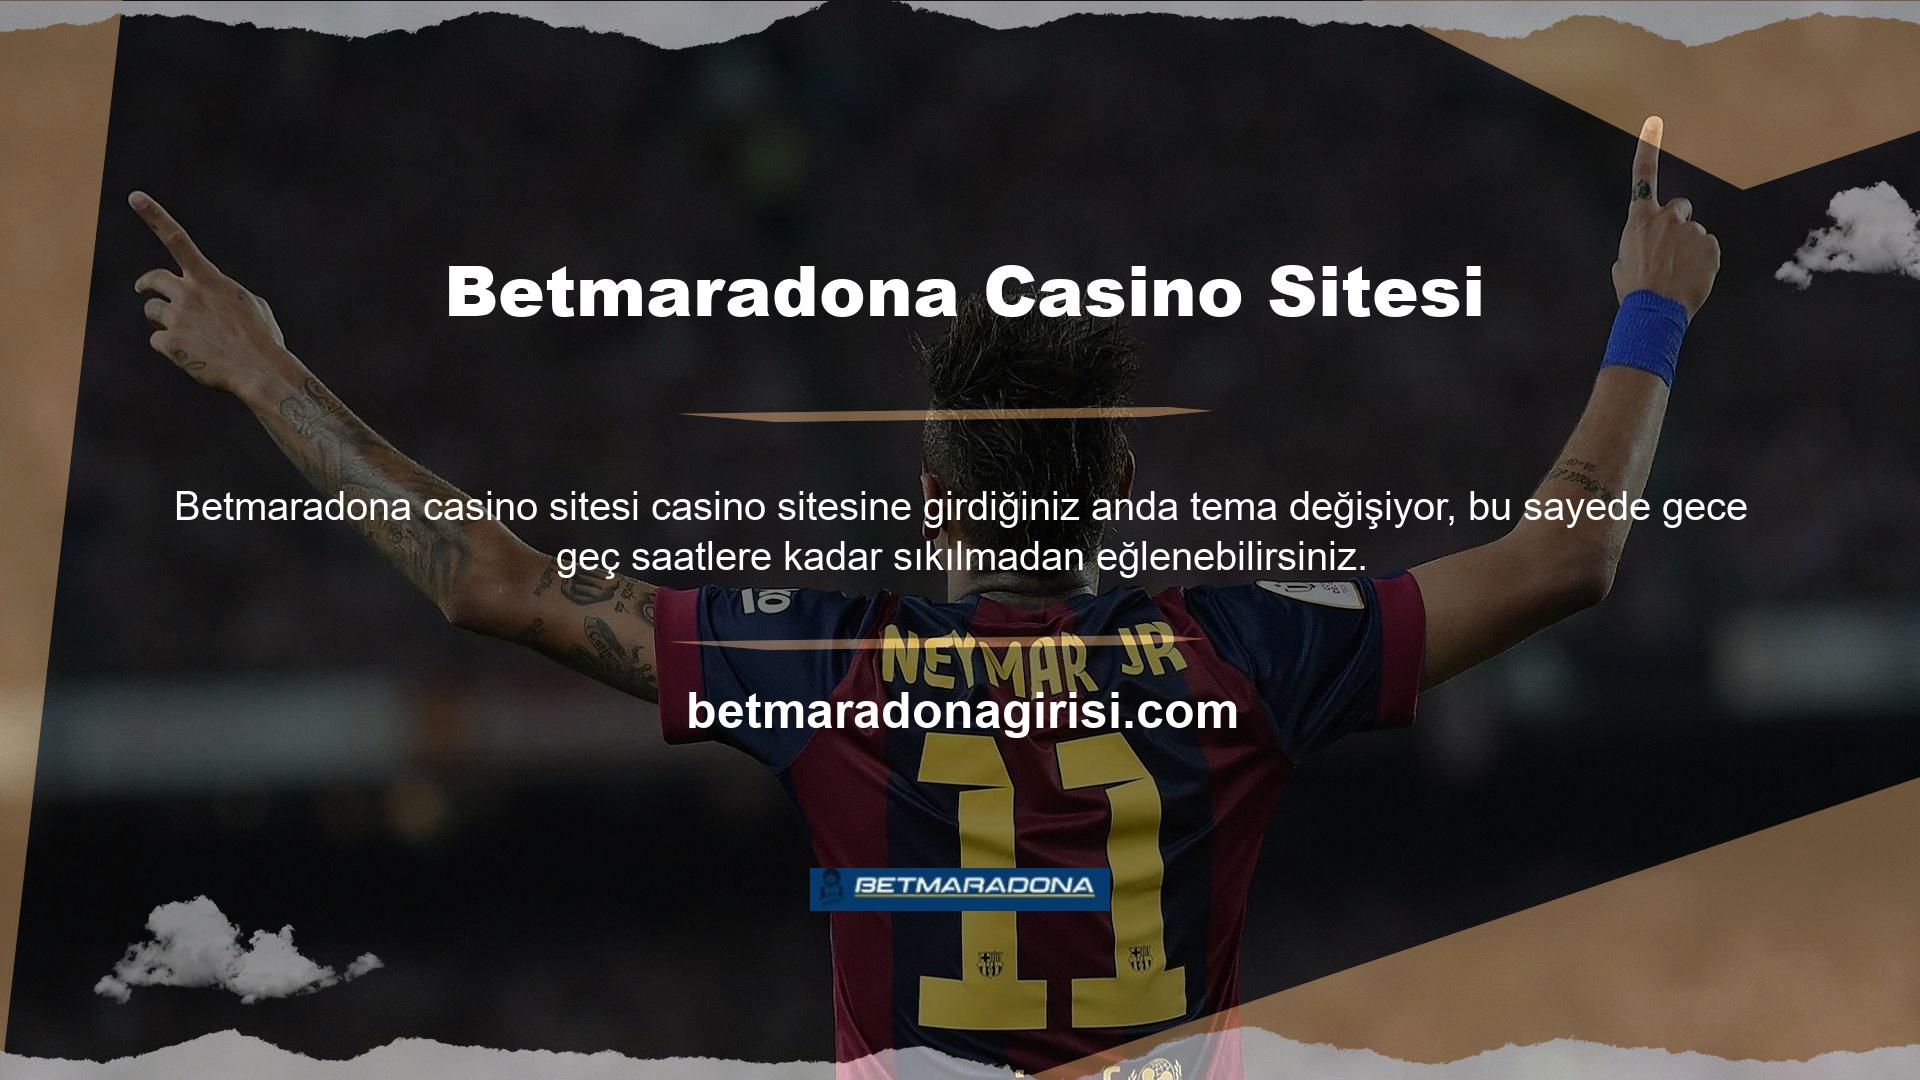 Betmaradona, mobil işlevselliğe sahip, kullanışlı, yüksek kaliteli bir web sitesidir